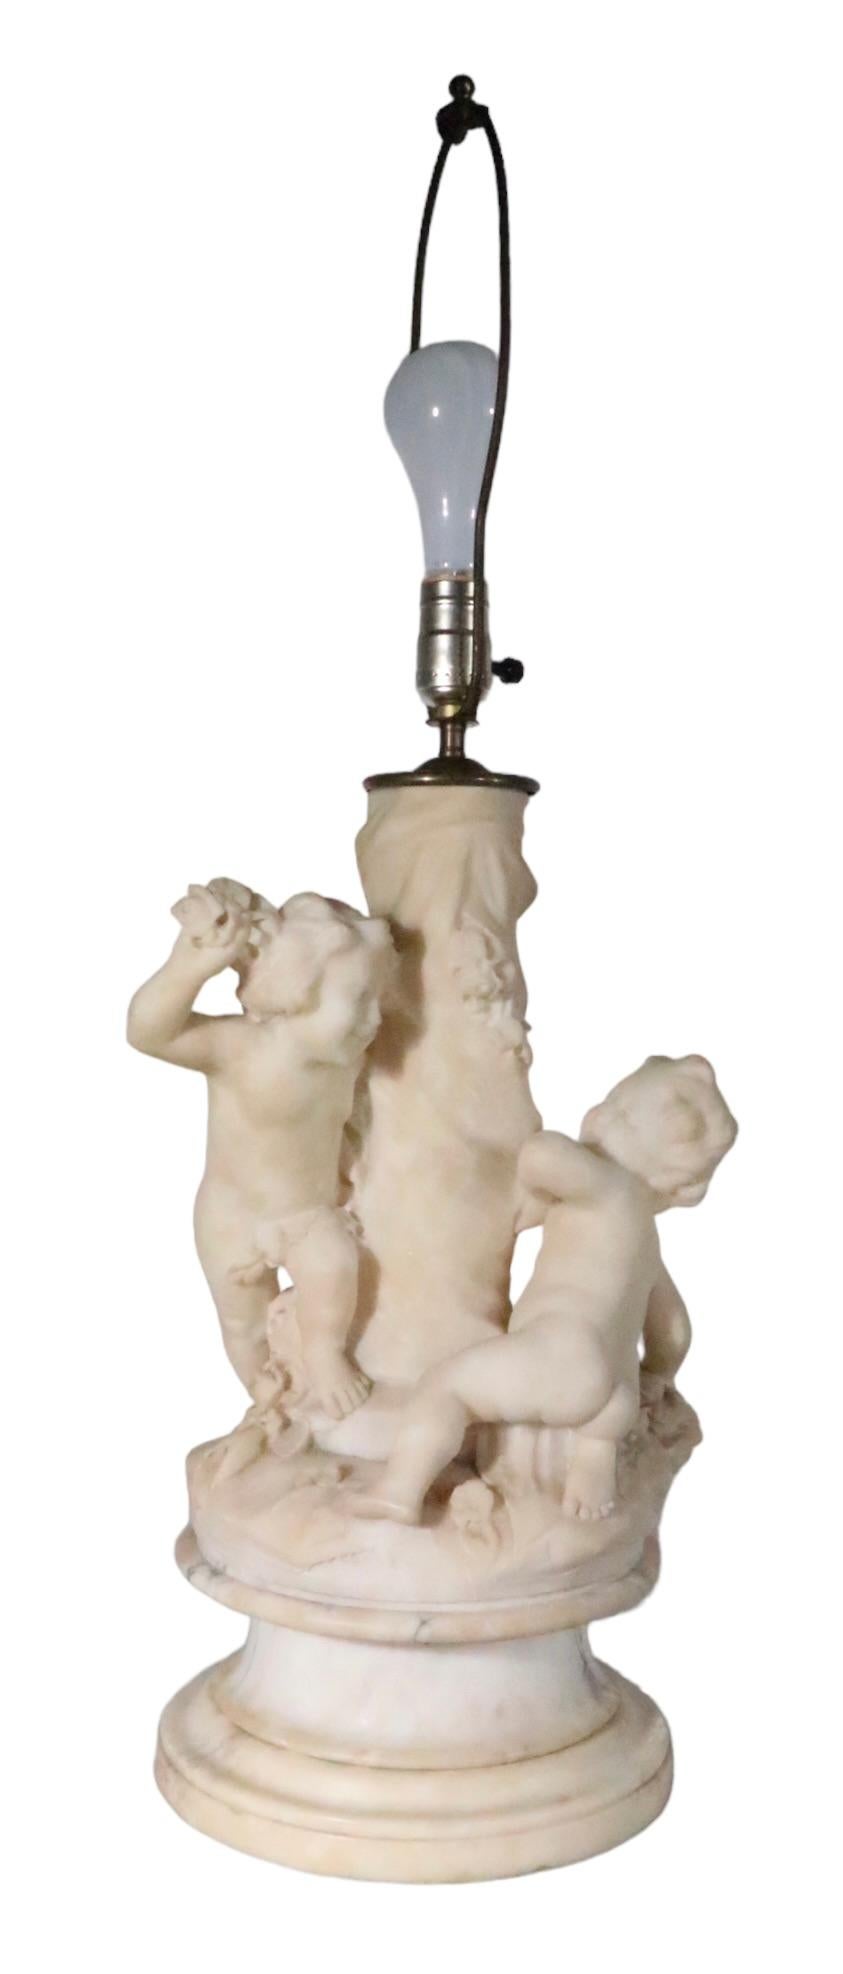 Lampe de table en marbre finement sculpté présentant deux figures de cupidon jouant autour d'un poteau central. La lampe est en très bon état d'origine, propre et fonctionnelle, ne présentant qu'une légère usure cosmétique, normale et cohérente avec